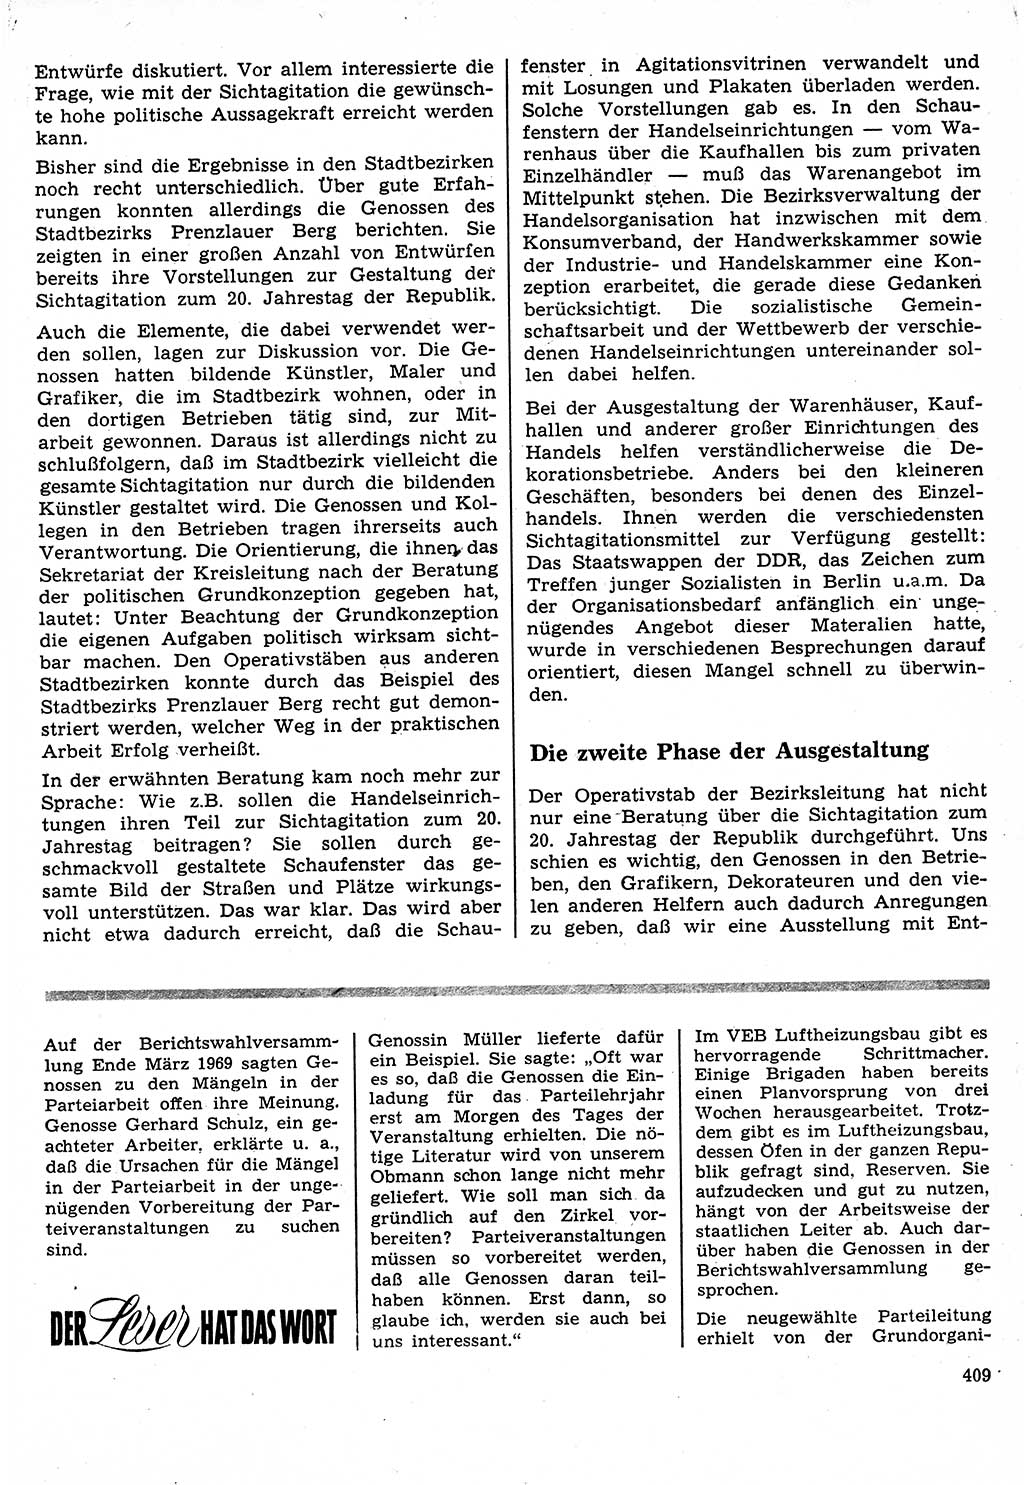 Neuer Weg (NW), Organ des Zentralkomitees (ZK) der SED (Sozialistische Einheitspartei Deutschlands) für Fragen des Parteilebens, 24. Jahrgang [Deutsche Demokratische Republik (DDR)] 1969, Seite 409 (NW ZK SED DDR 1969, S. 409)